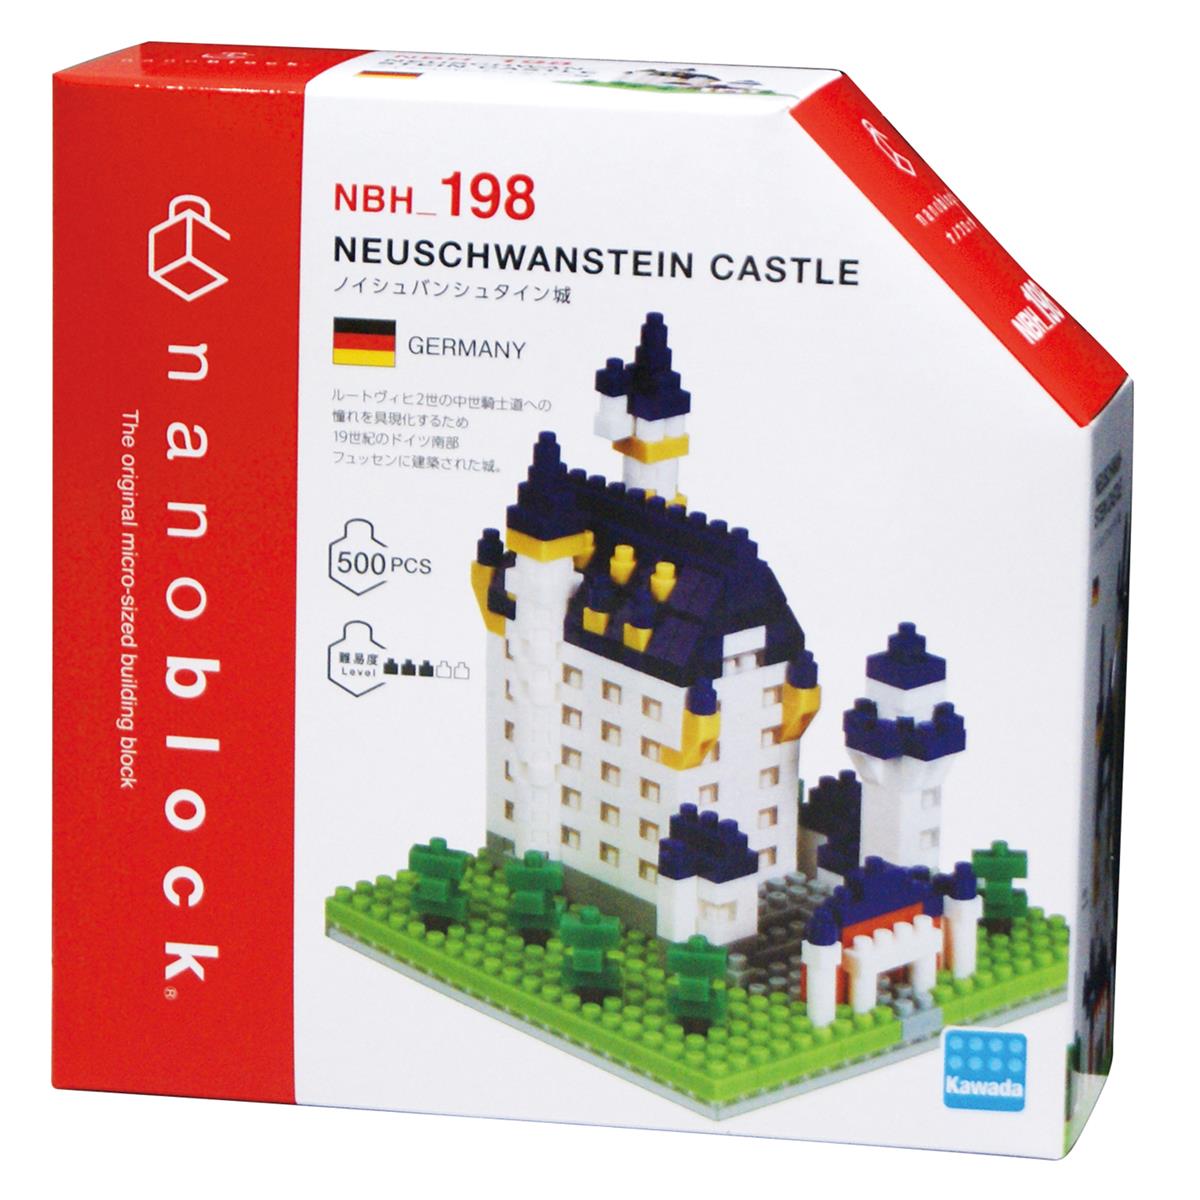 NBH-198 - Neuschwanstein Castle